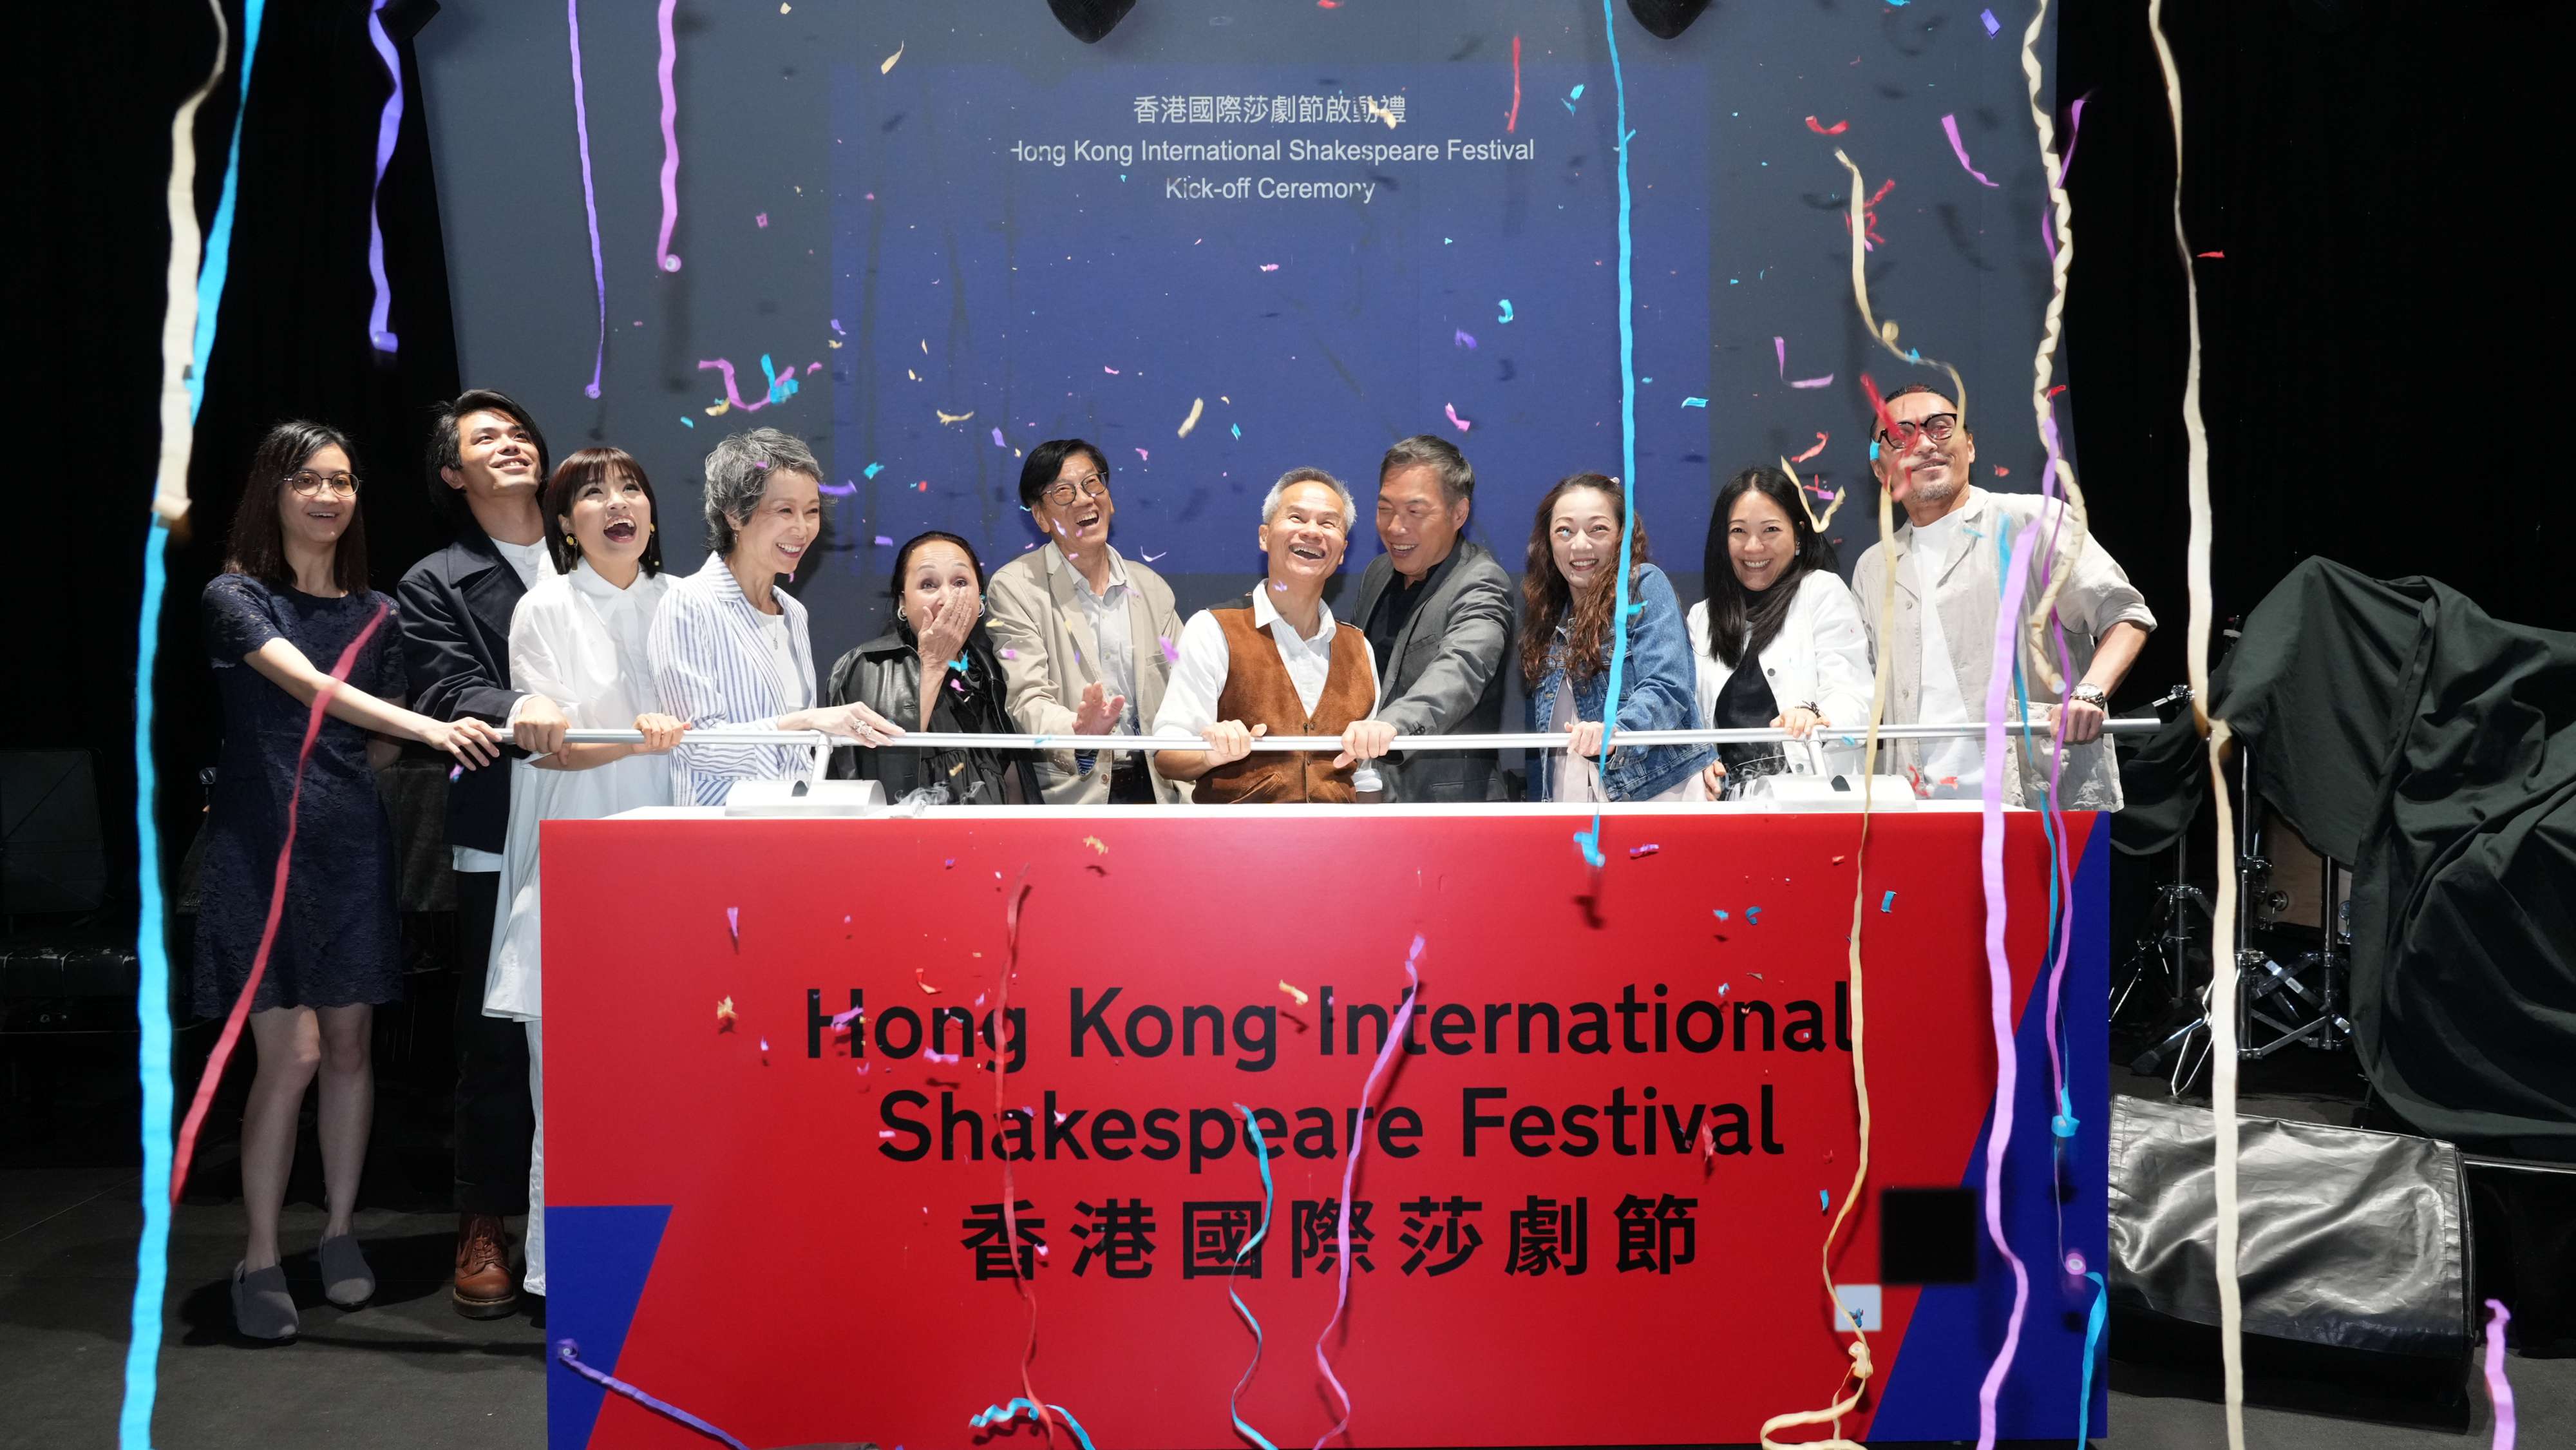 首屆香港國際莎劇節6月舉行 薈萃國際巨匠與劇場創作者